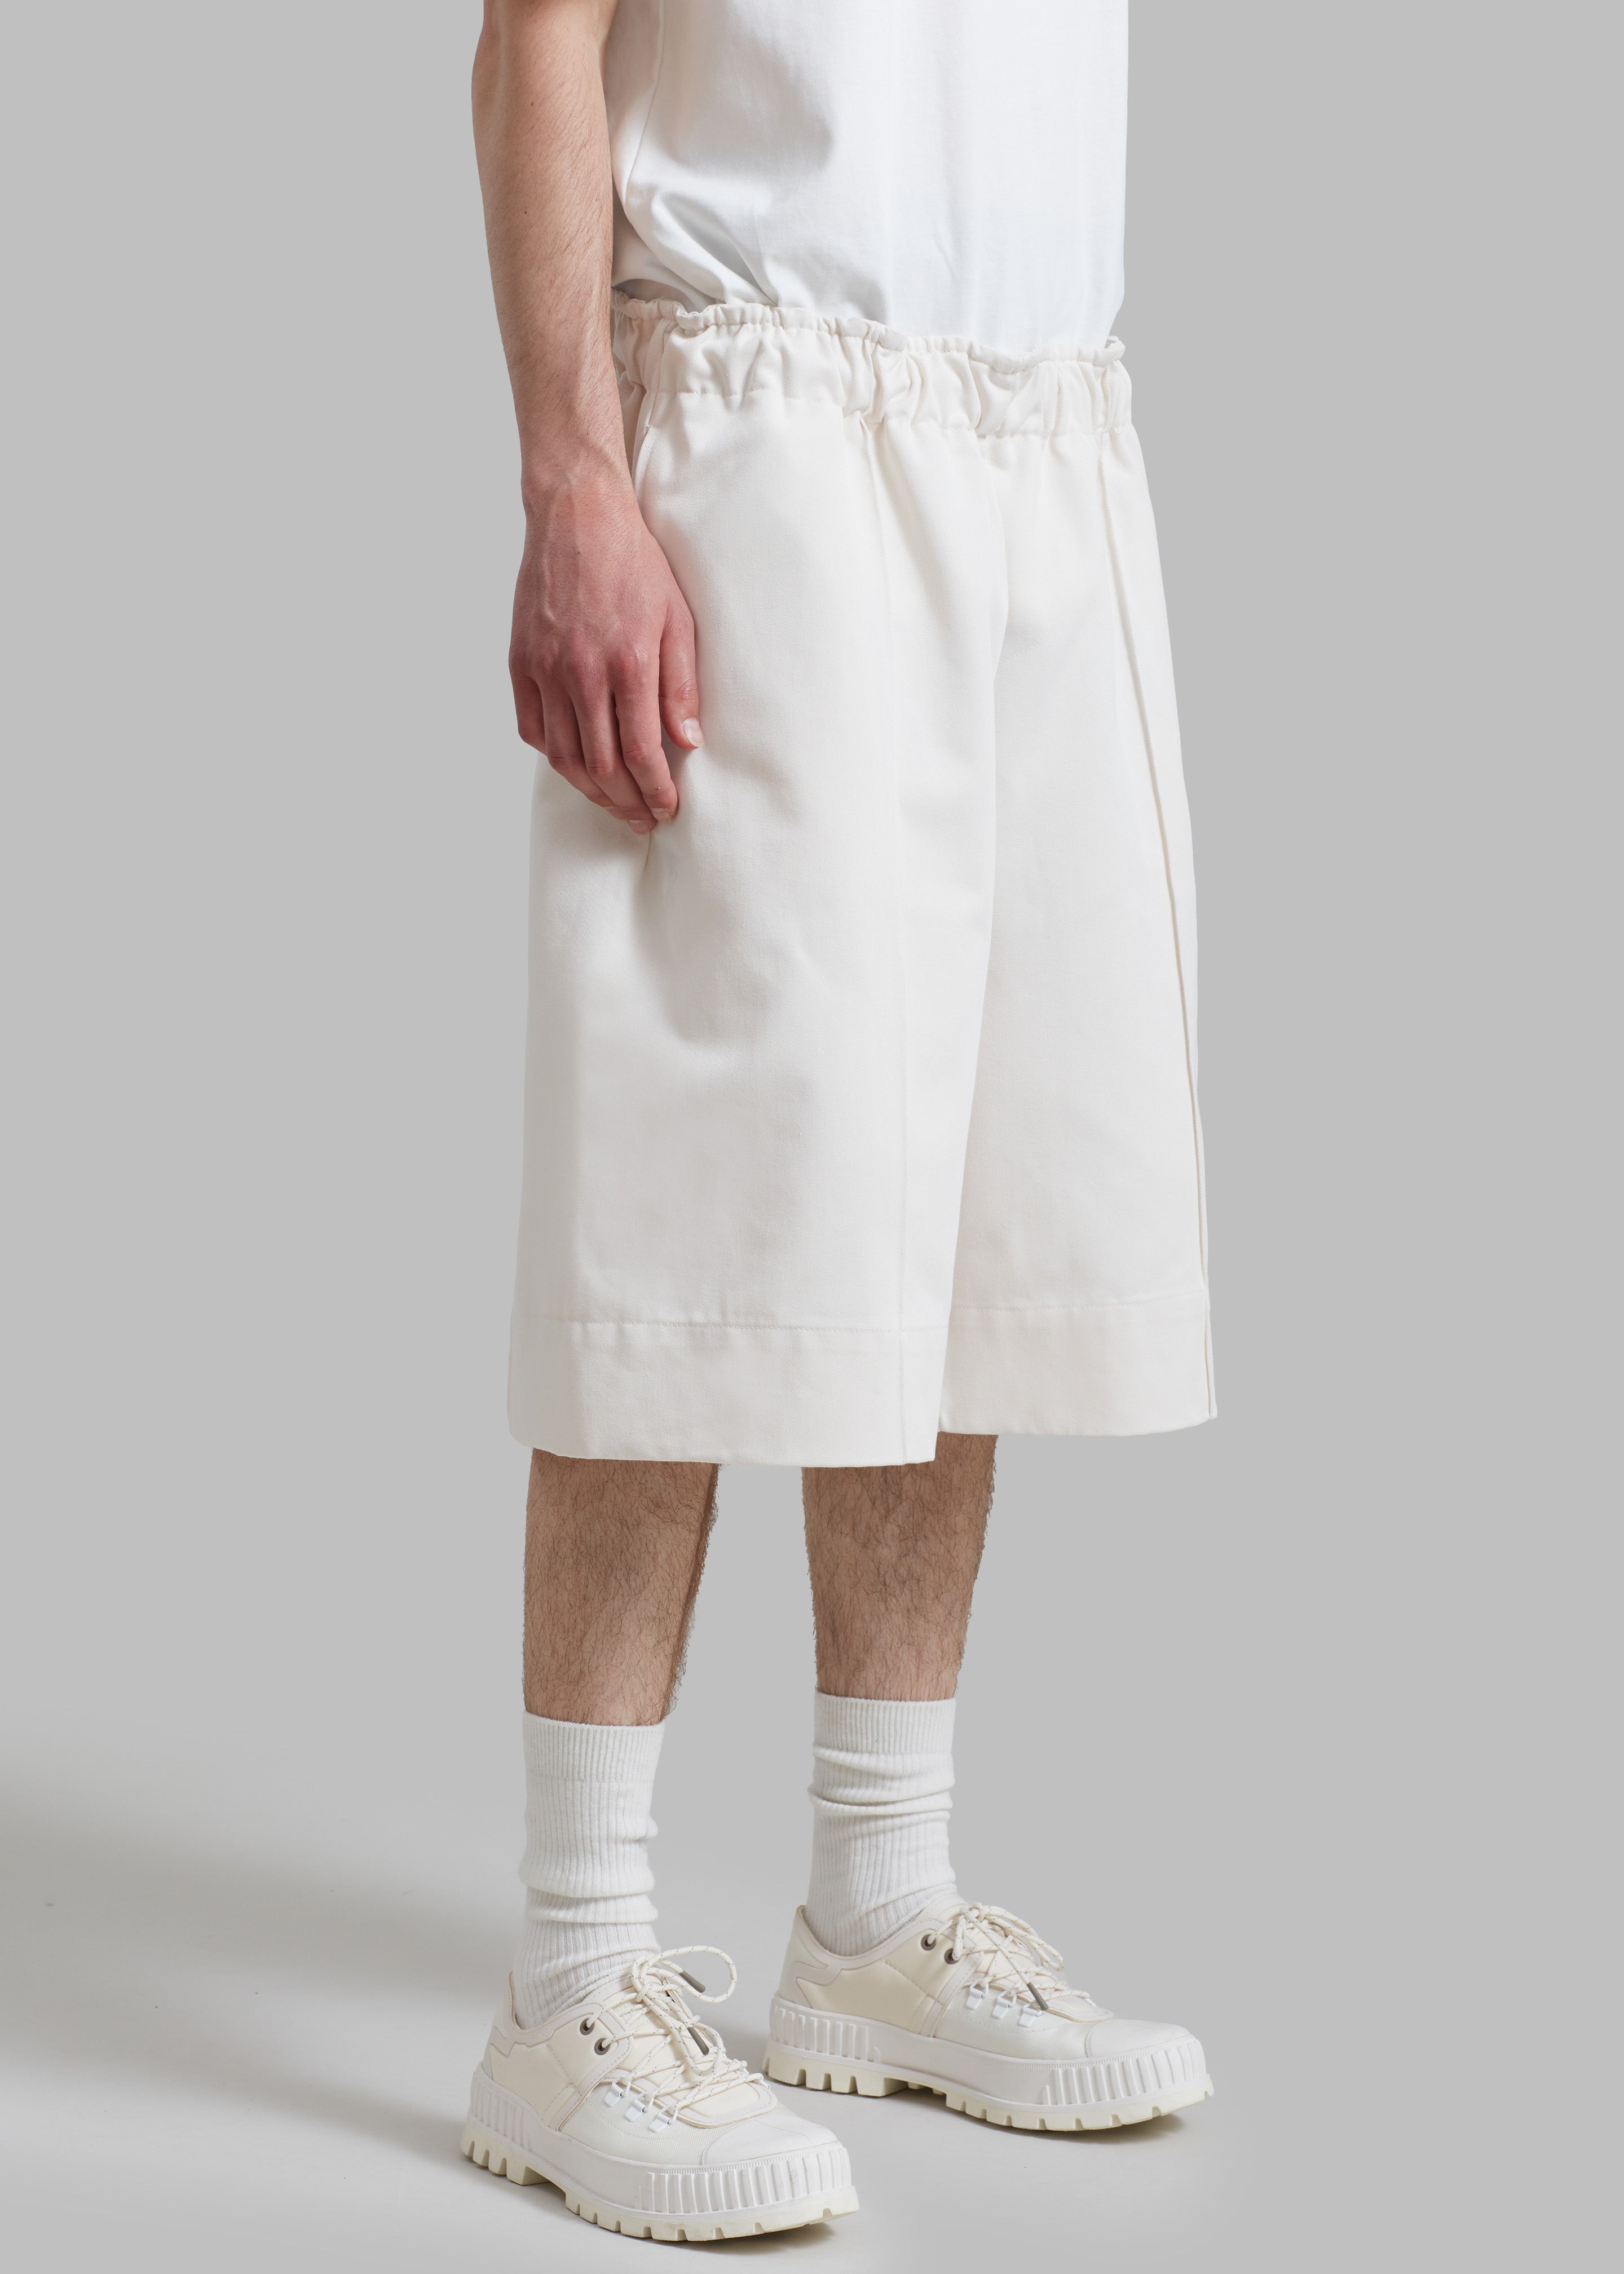 Adan Bermuda Shorts - Cream - 4